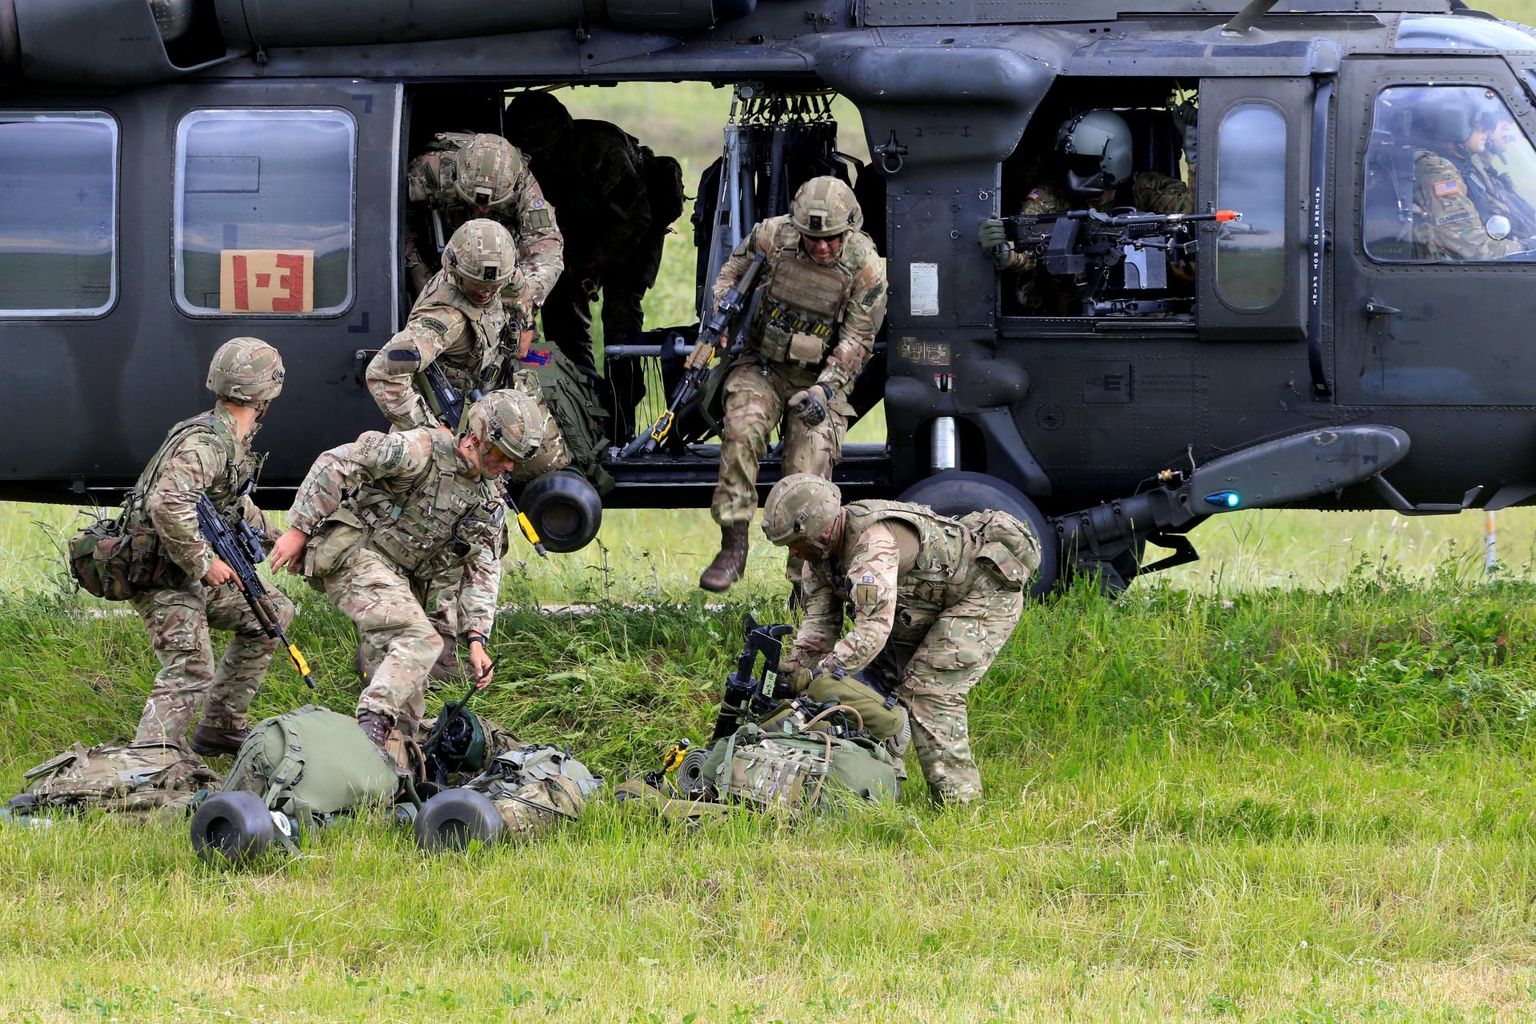 Ameerika Ühendriikide sõdurid harjutamas Poola ja Leedu piiril asuva Suwałki maakitsuse kaitsmist, mis on ainus Balti riikide maismaaühendus teiste NATO riikidega.